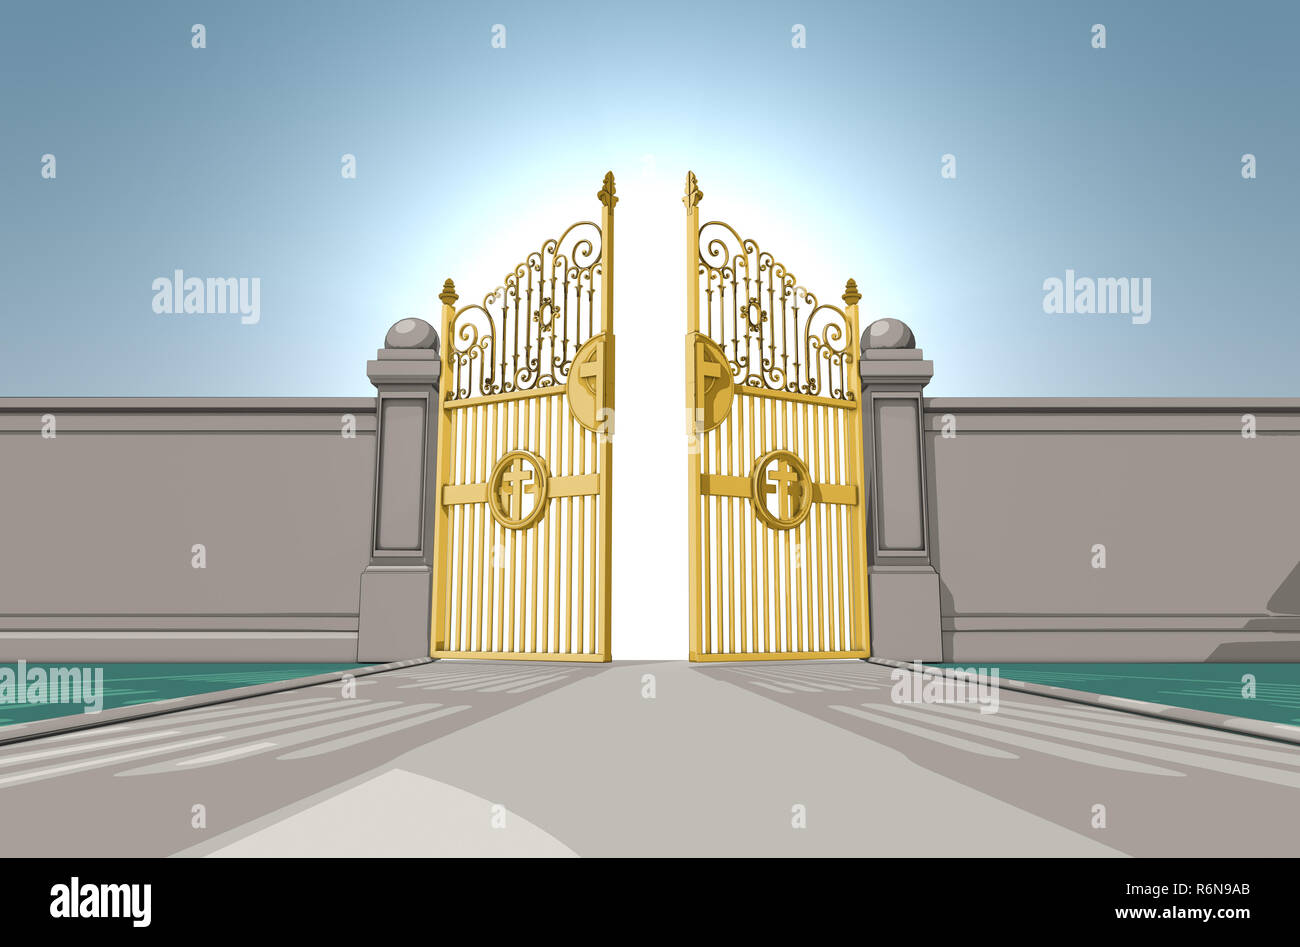 Eine bebilderte Darstellung der Goldenen pearly Gates des Himmels öffnen auf einem blauen Himmel Hintergrund - 3D-Rendering Stockfoto